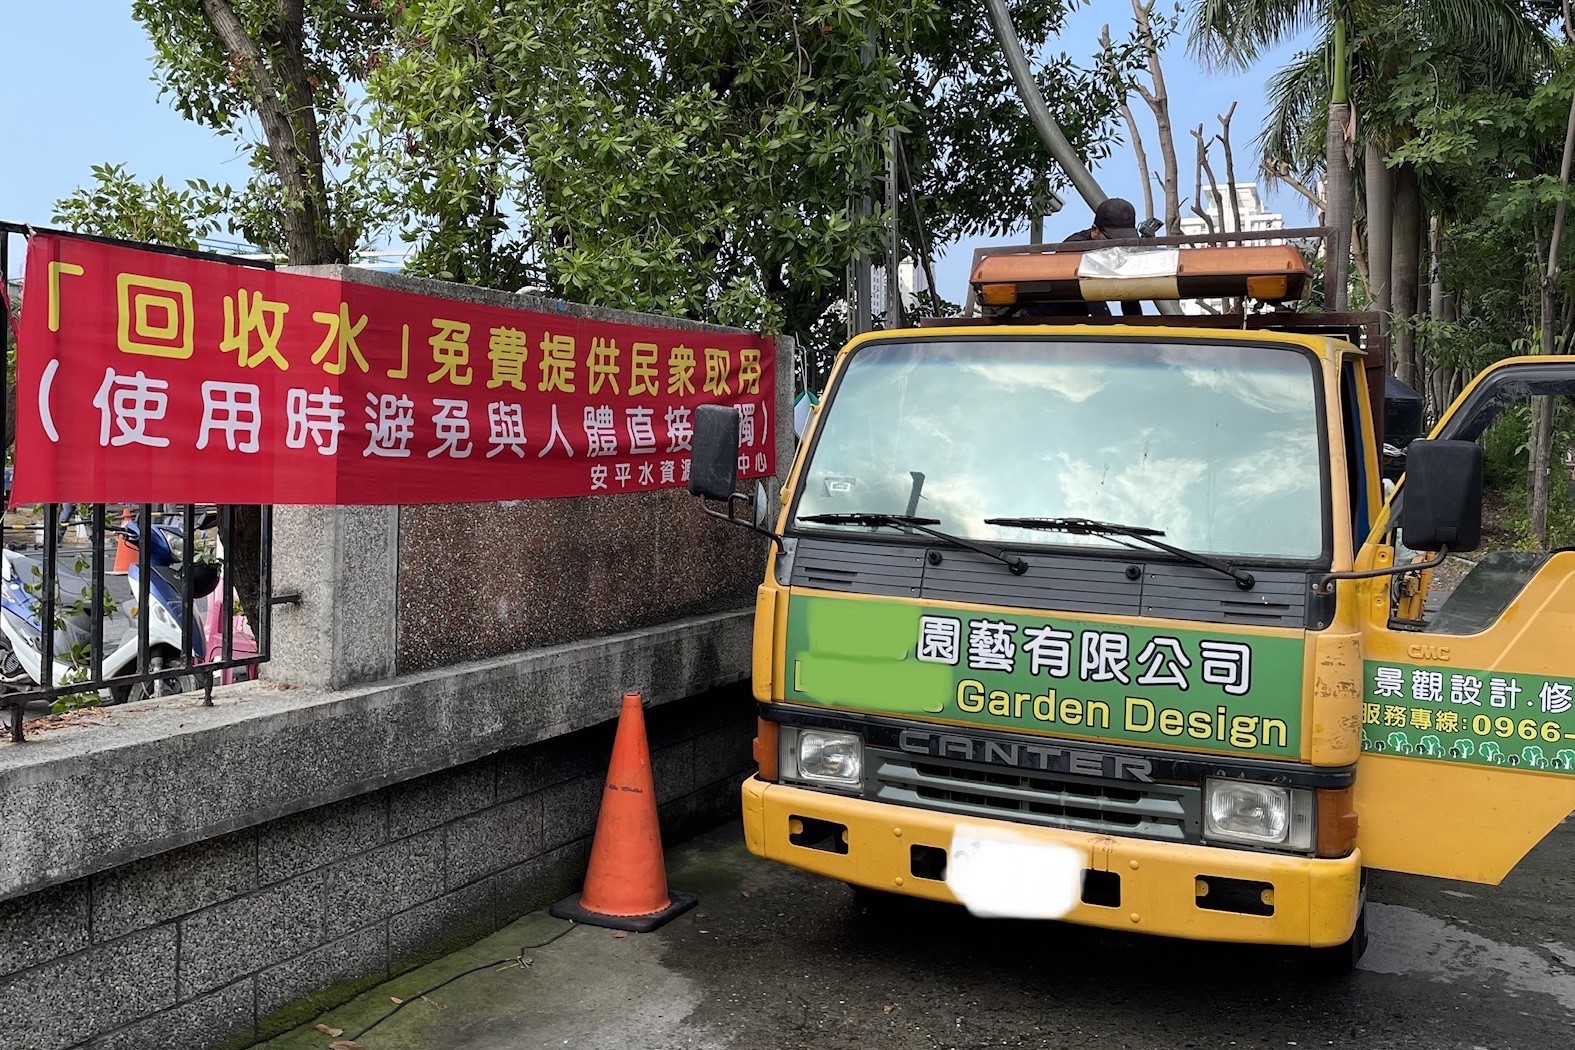 時序進入南部枯水期 臺南市積極整備抗旱節水